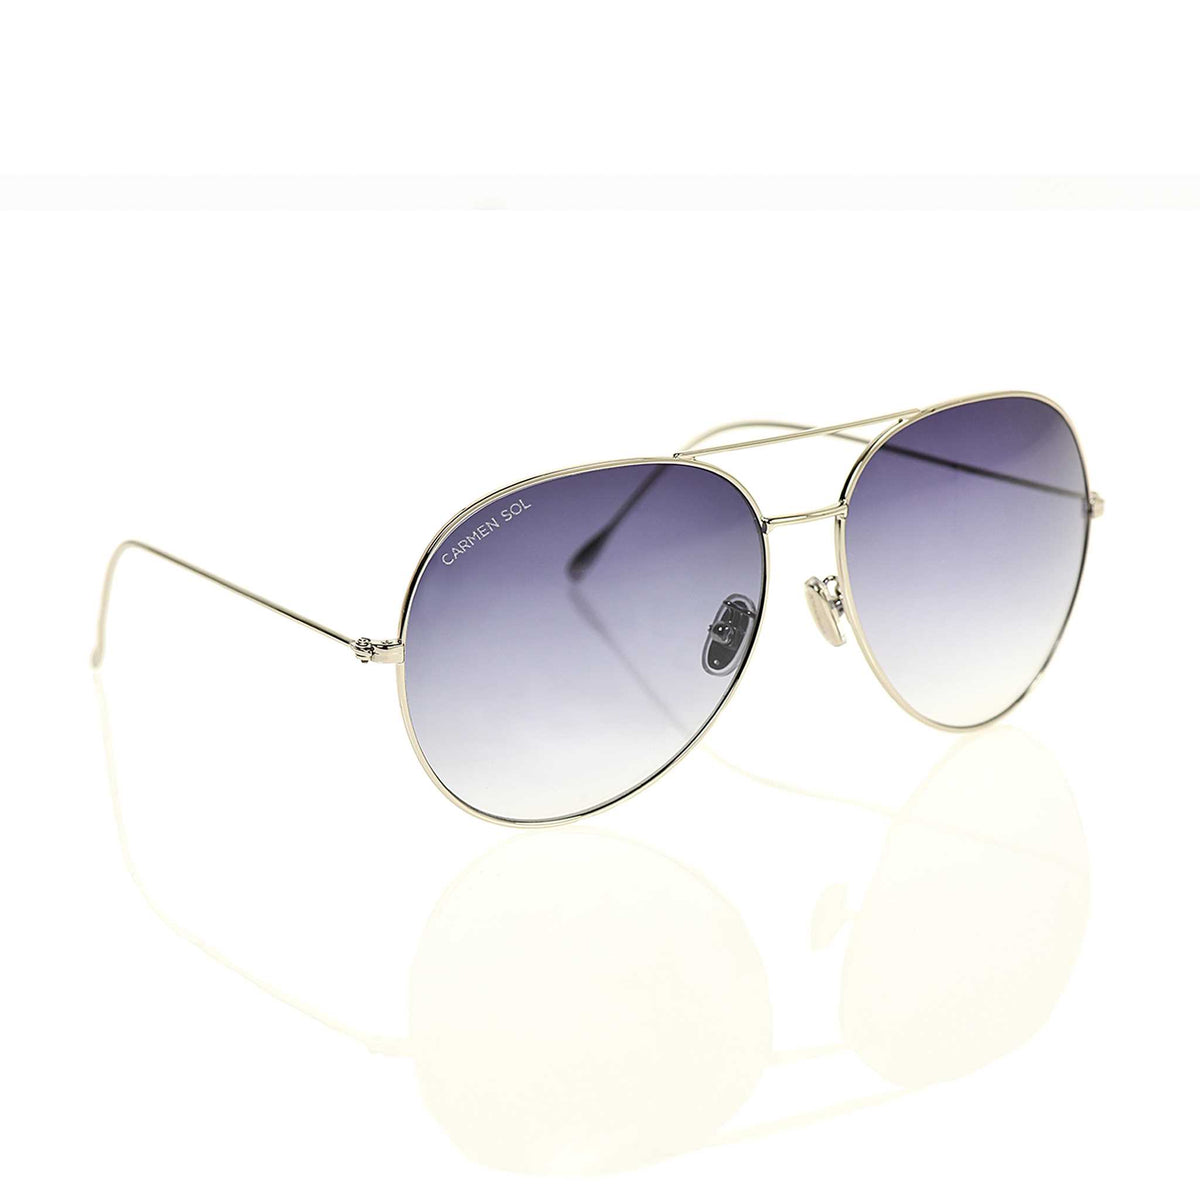 Designer sunglasses Carmen Sol for women and for men